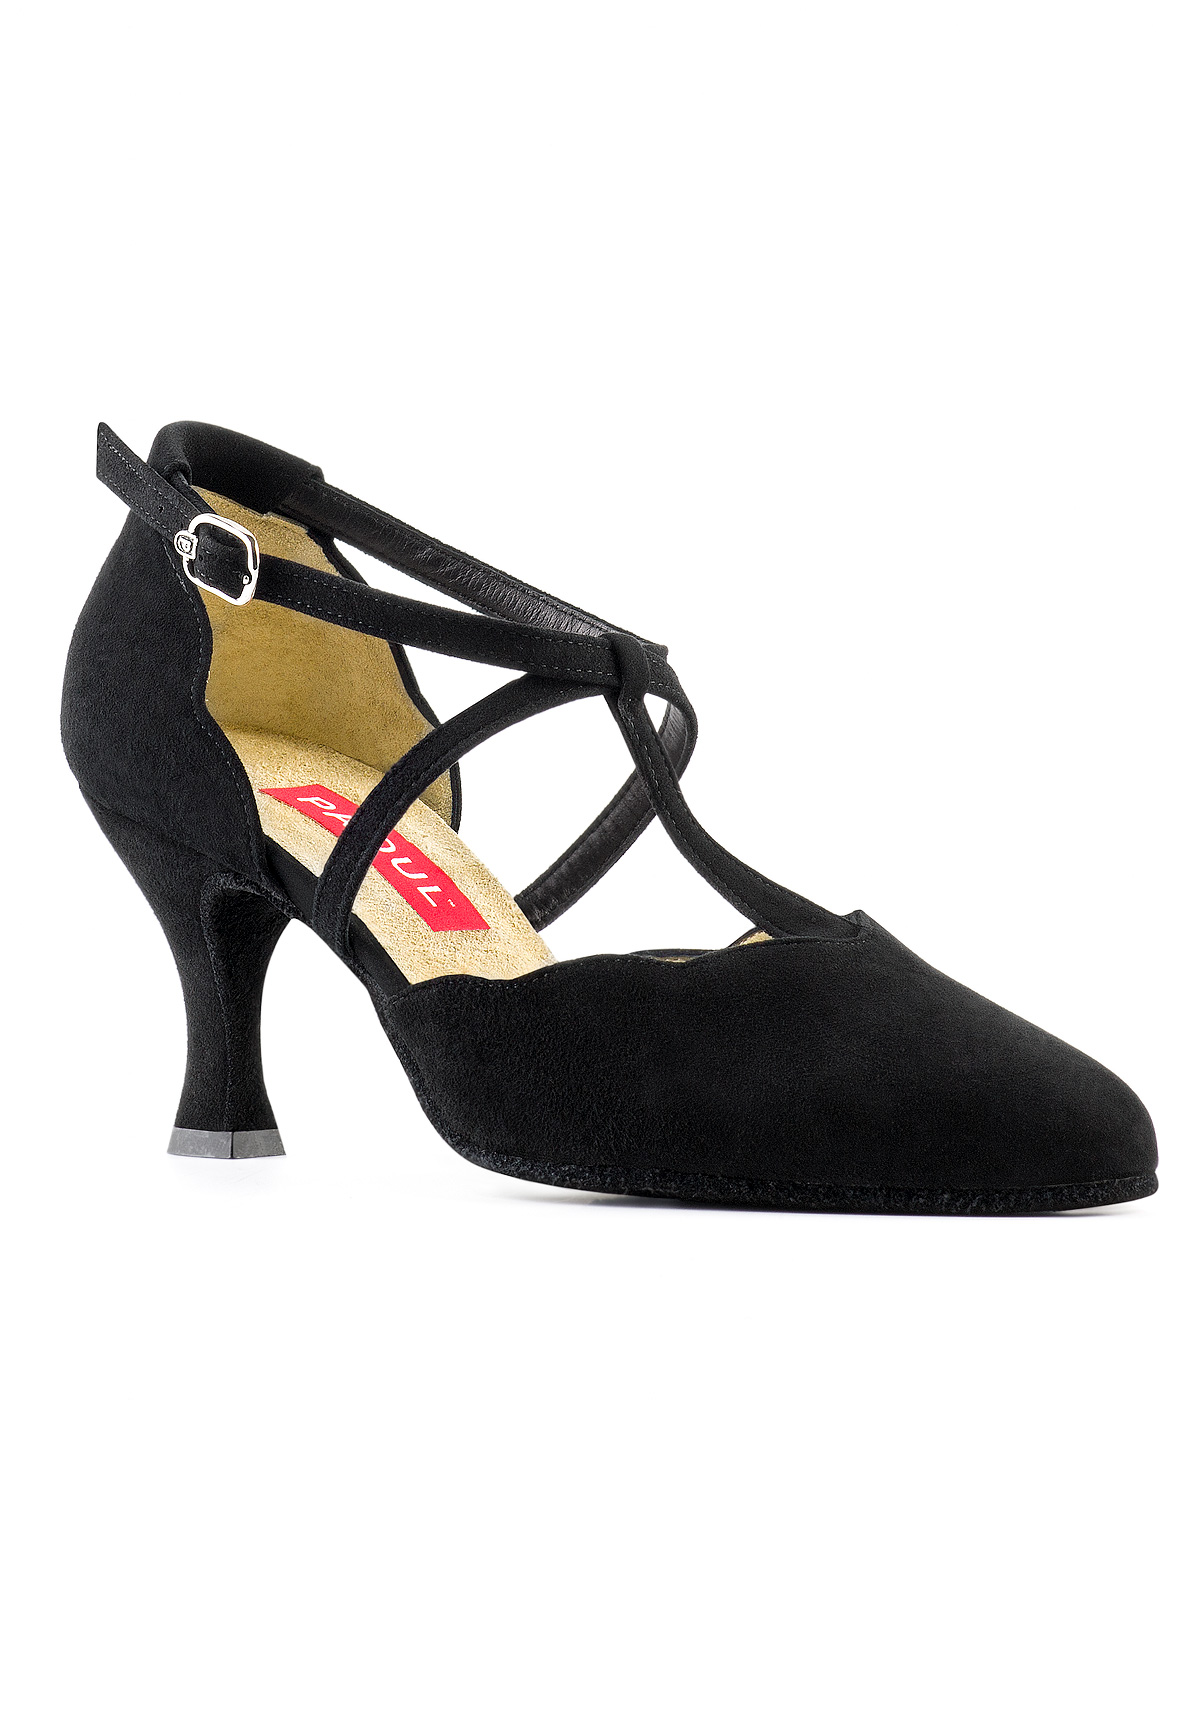 paoul dance shoes online shop